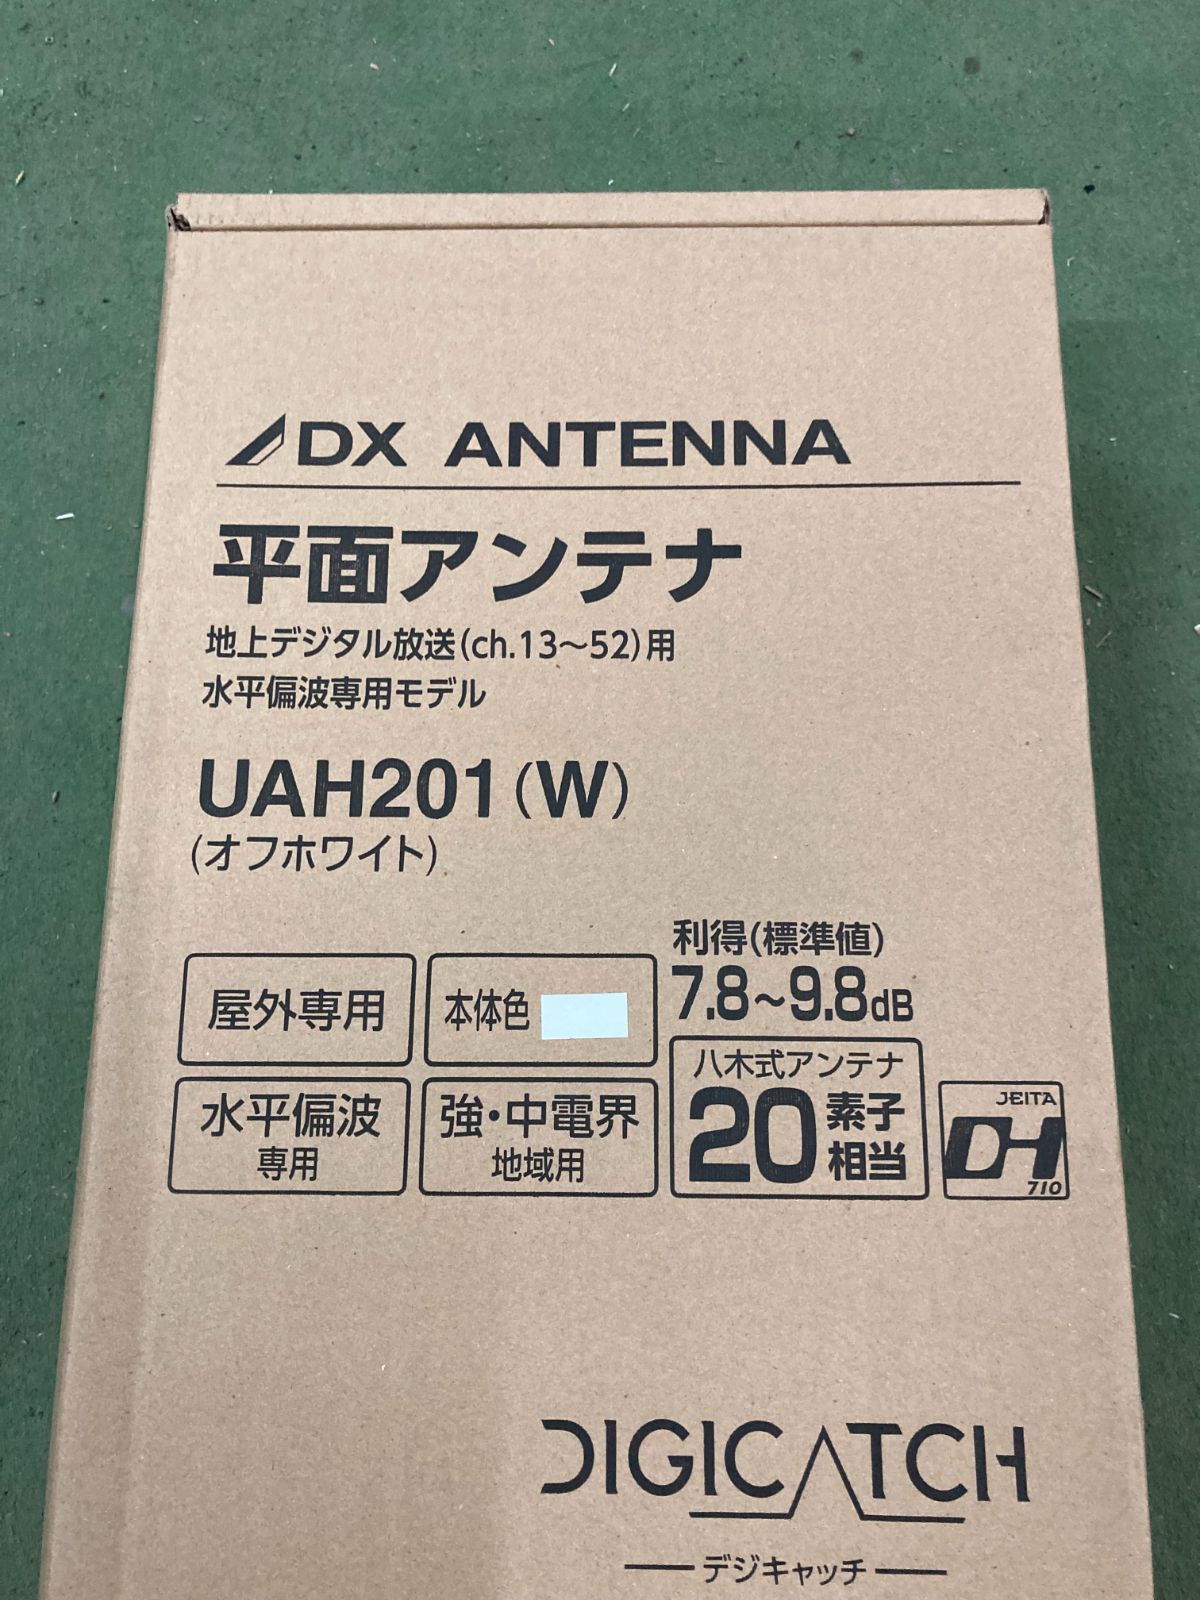 垂直偏波モデル】DX UHF平面アンテナ 20素子相当 UAH201V - テレビ